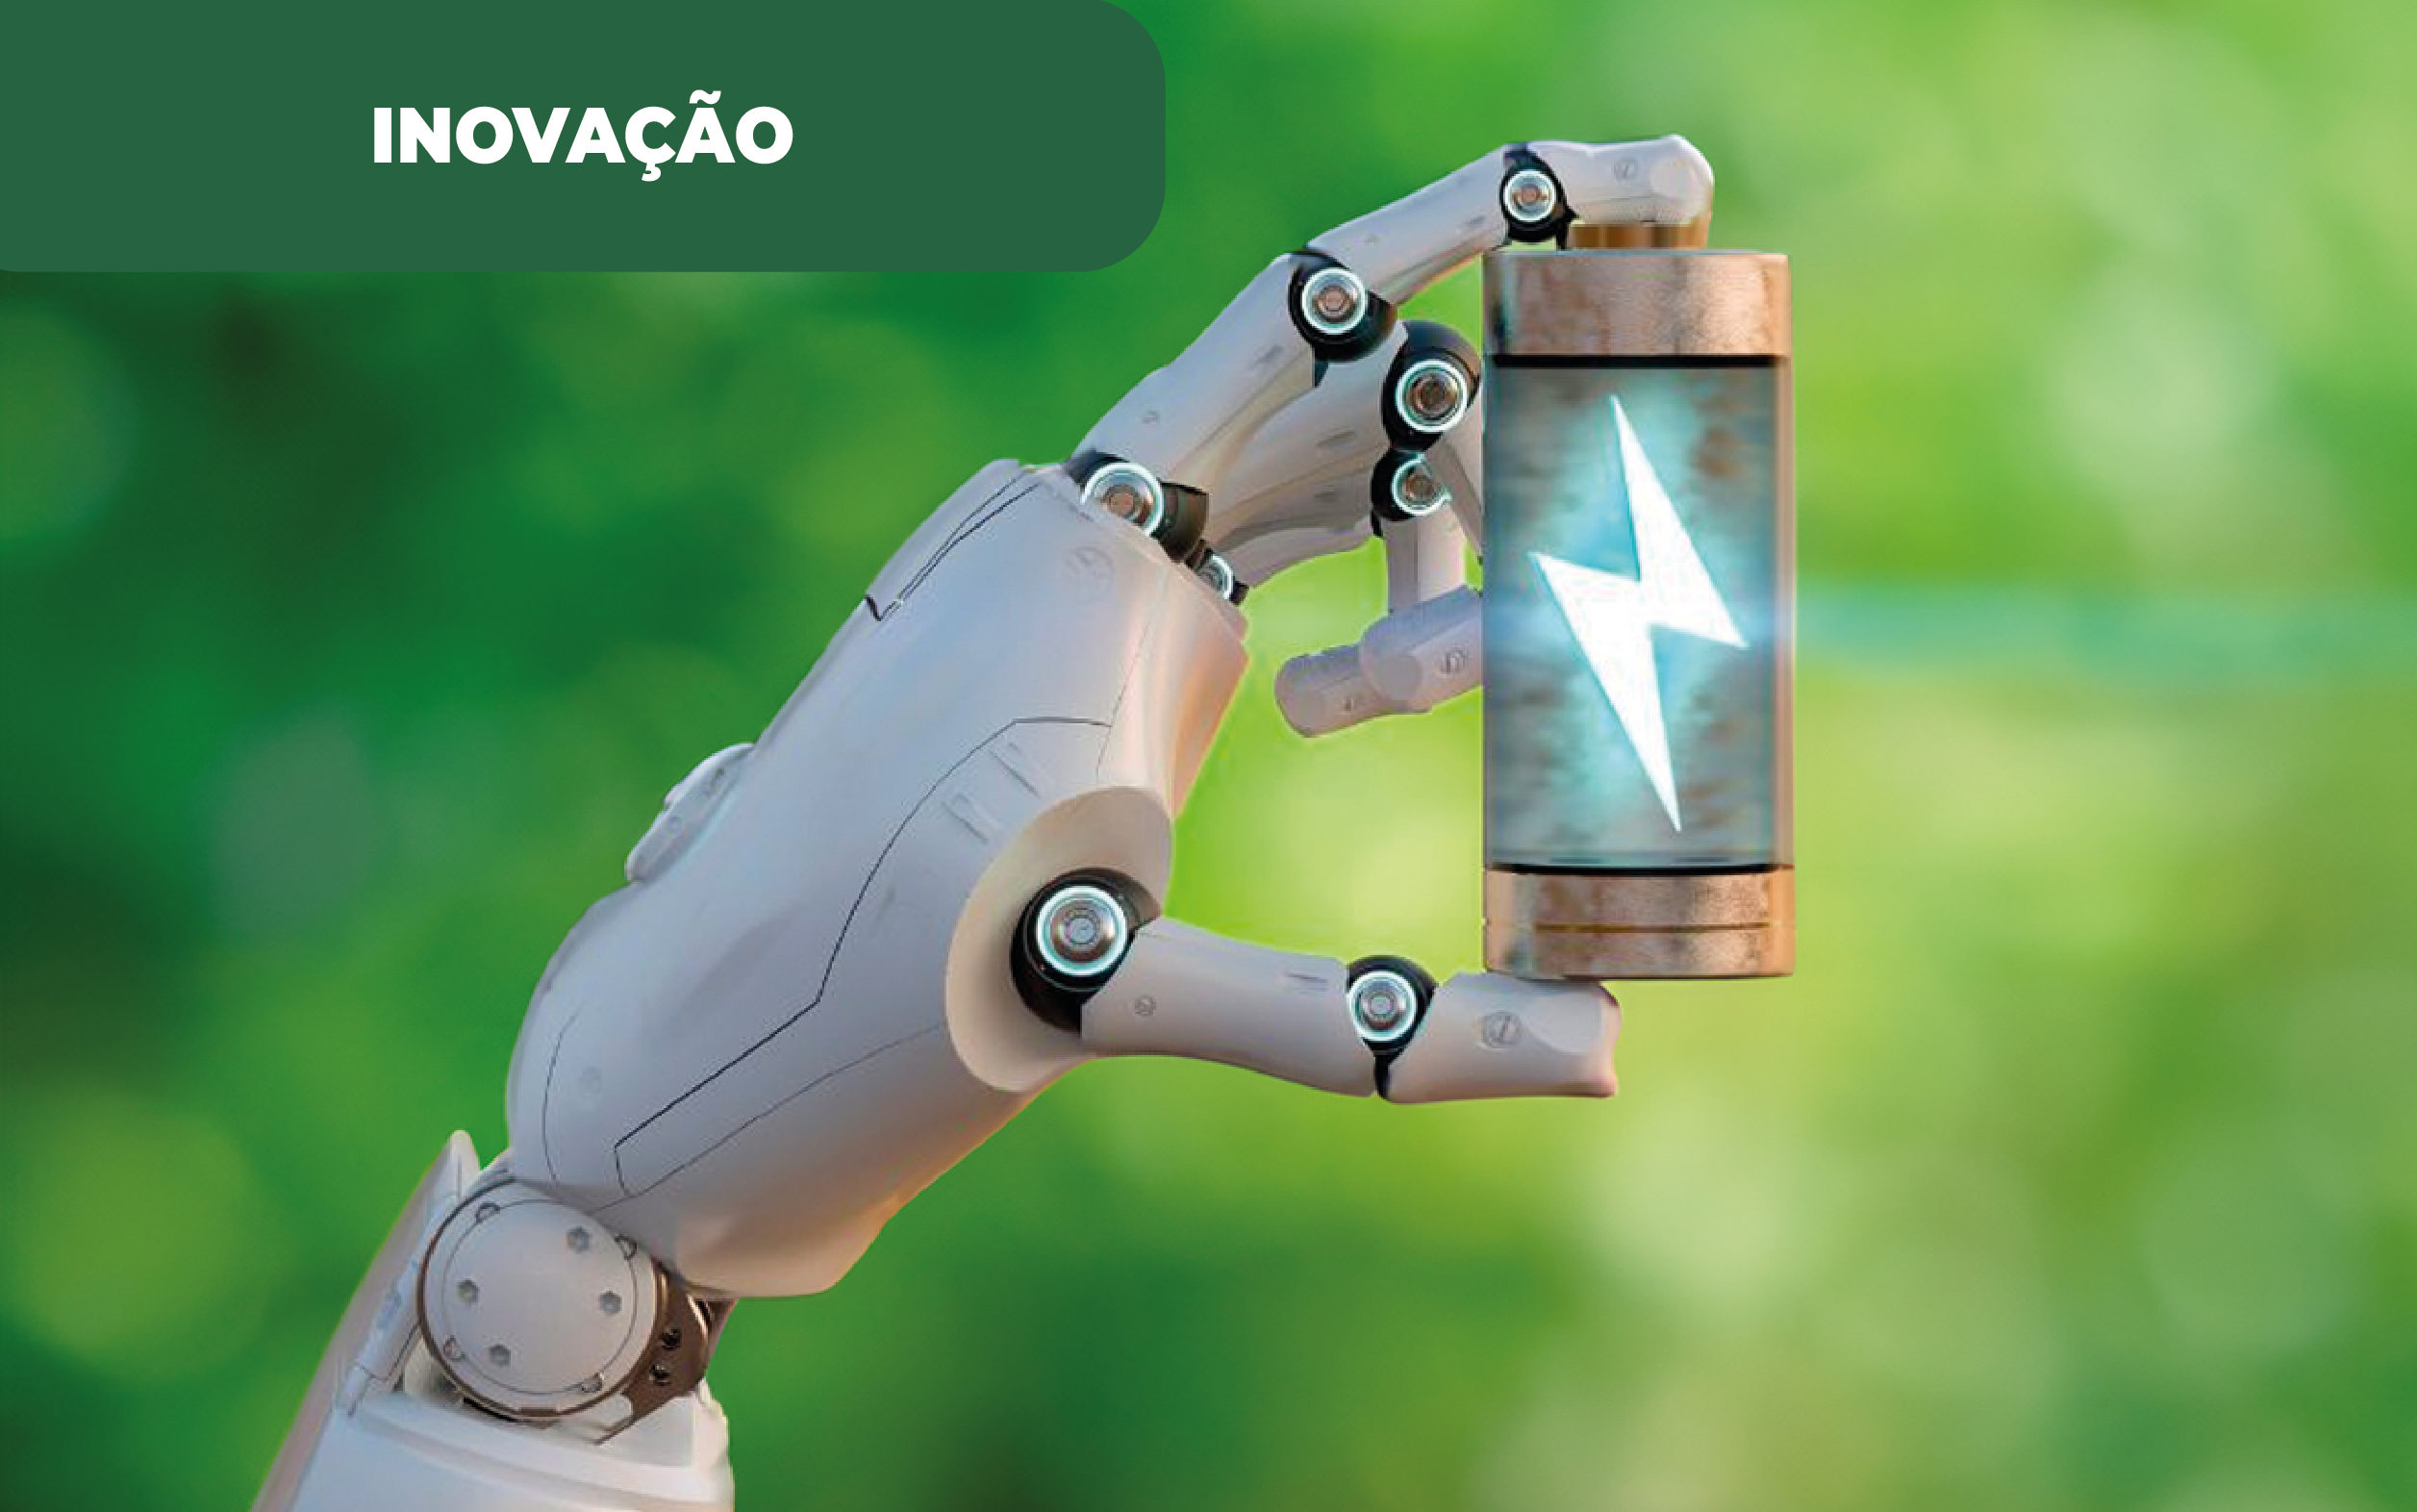 Imagem colorida e ilustrativa de uma mão "mecânica", robotizada, representando a Inteligência Artificial ou IA, segurando uma pilha/bateria representando uma fonte de energia, com um Z, no interior. Na Microsoft, a IA ajuda à geração de materiais, num trabalho que envolve várias áreas de engenharia.